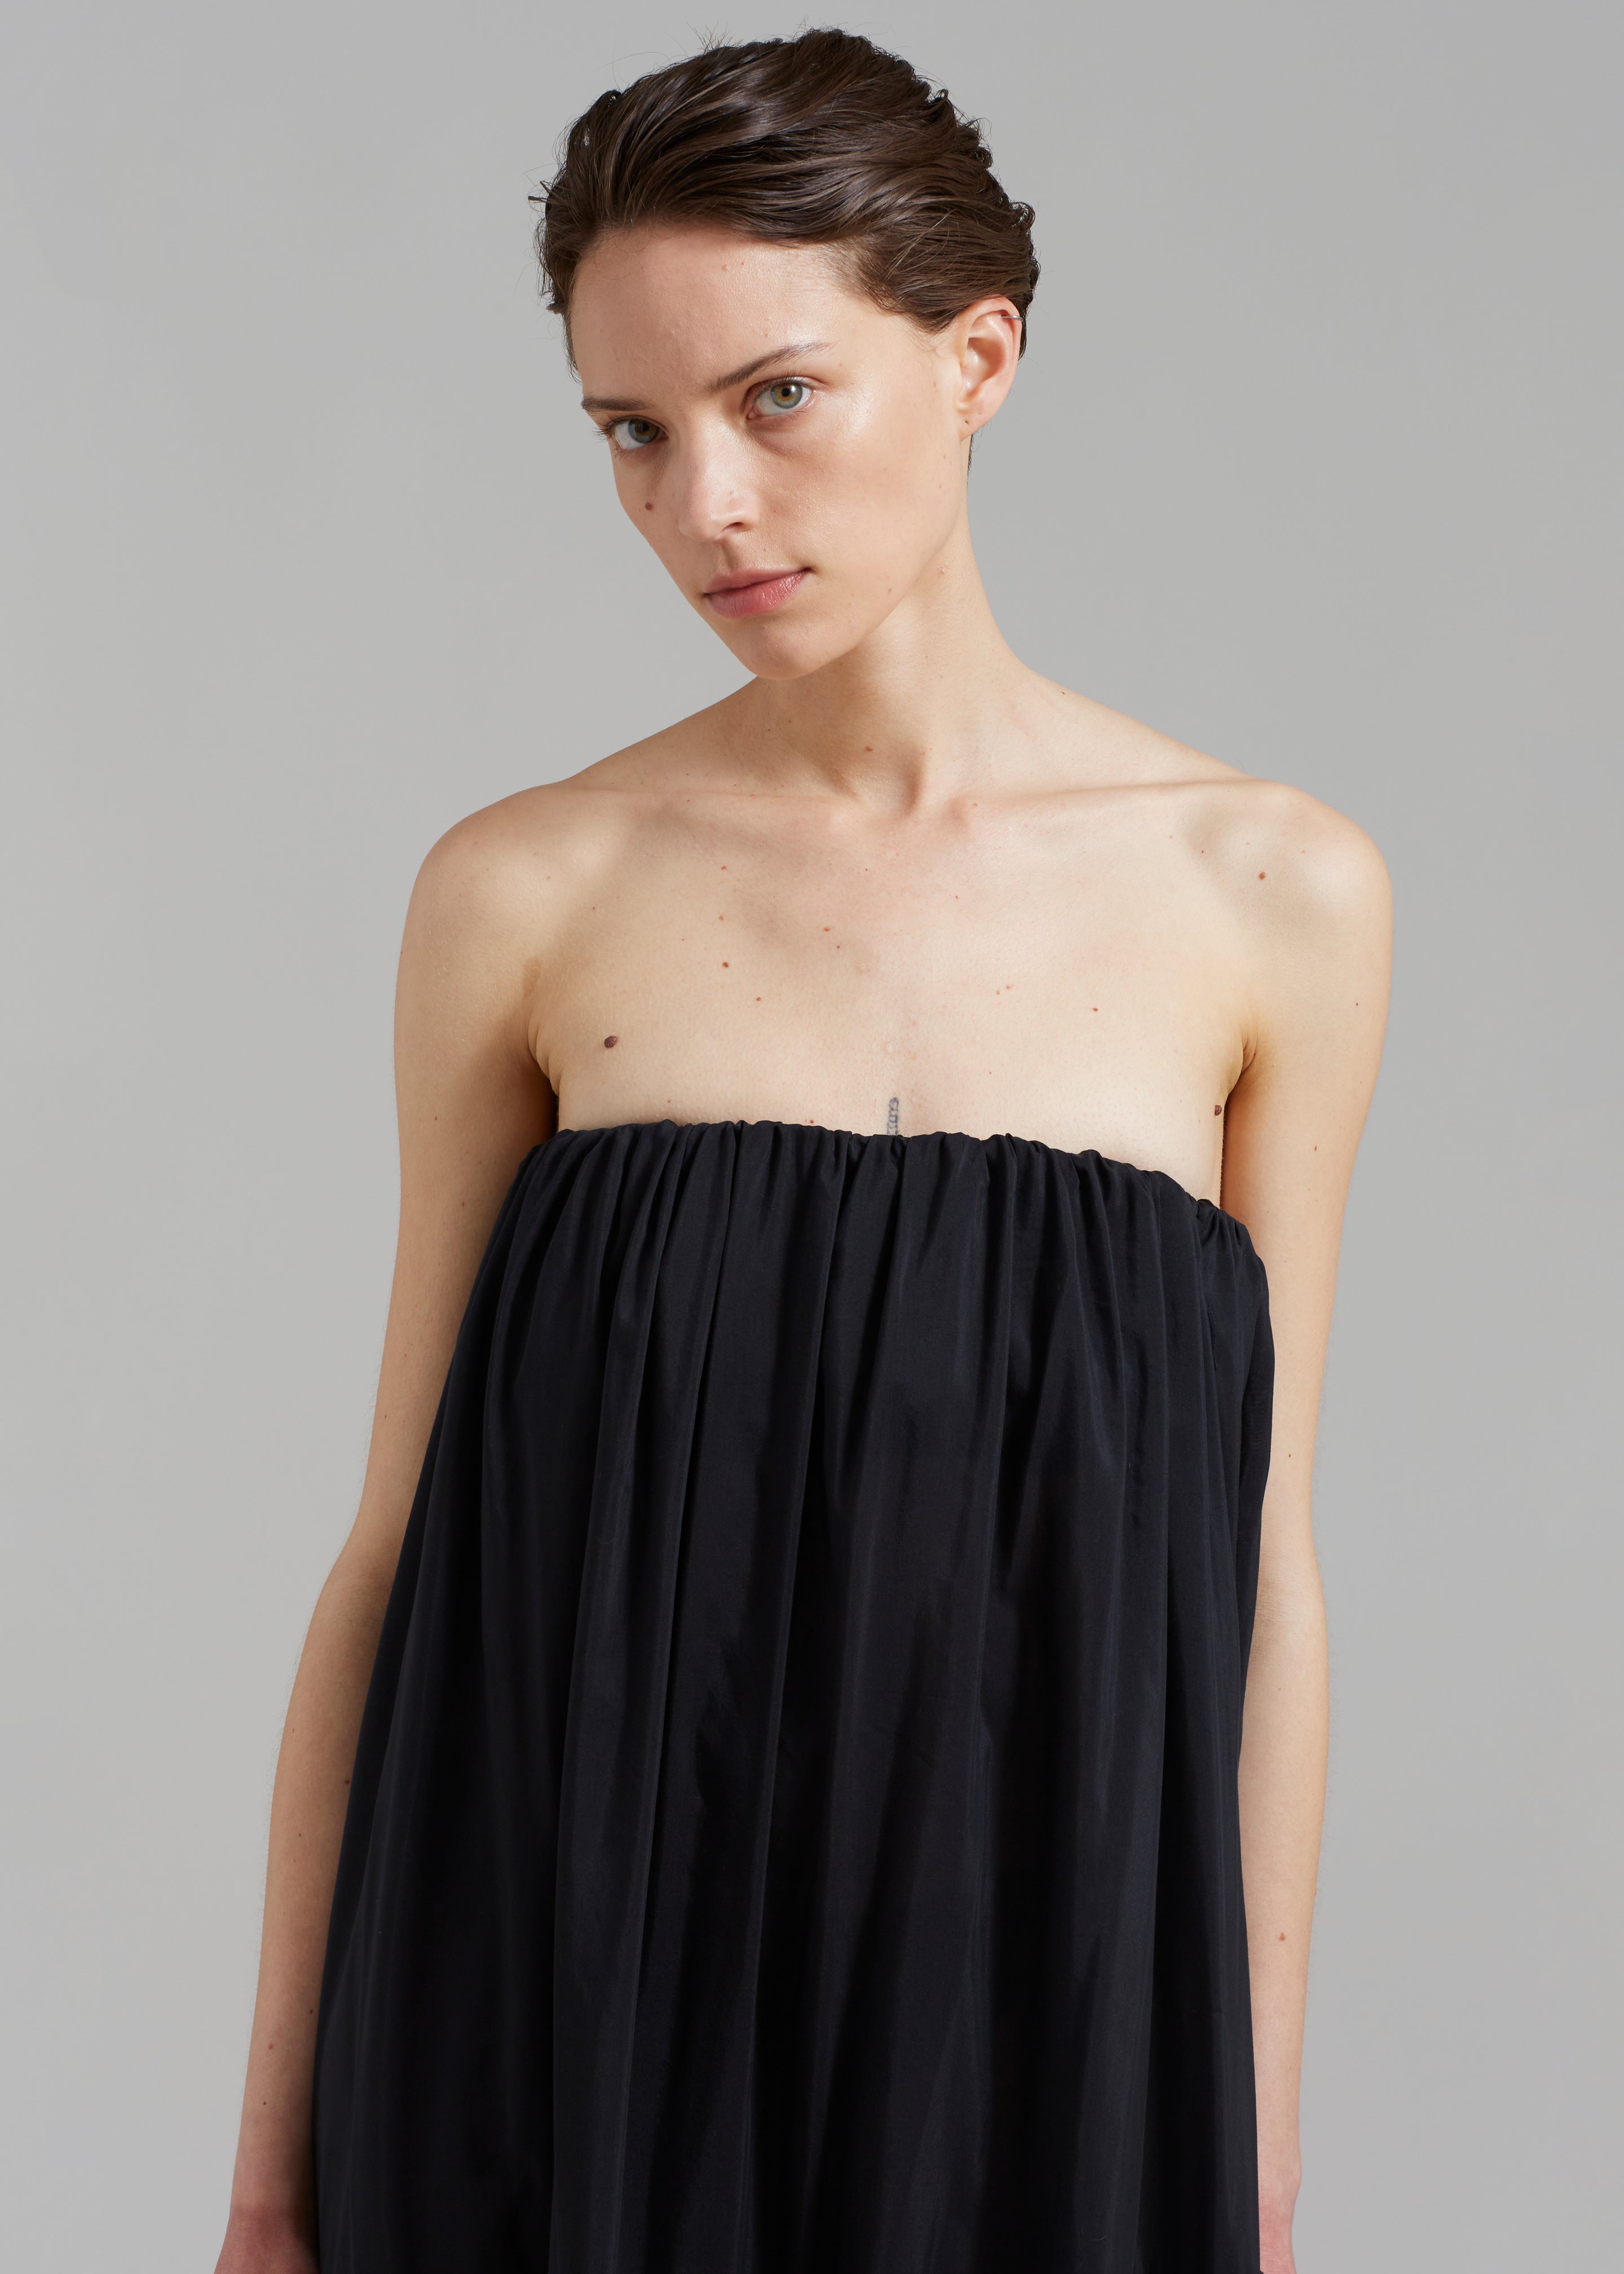 Matteau Voluminous Strapless Tiered Dress - Black - 4